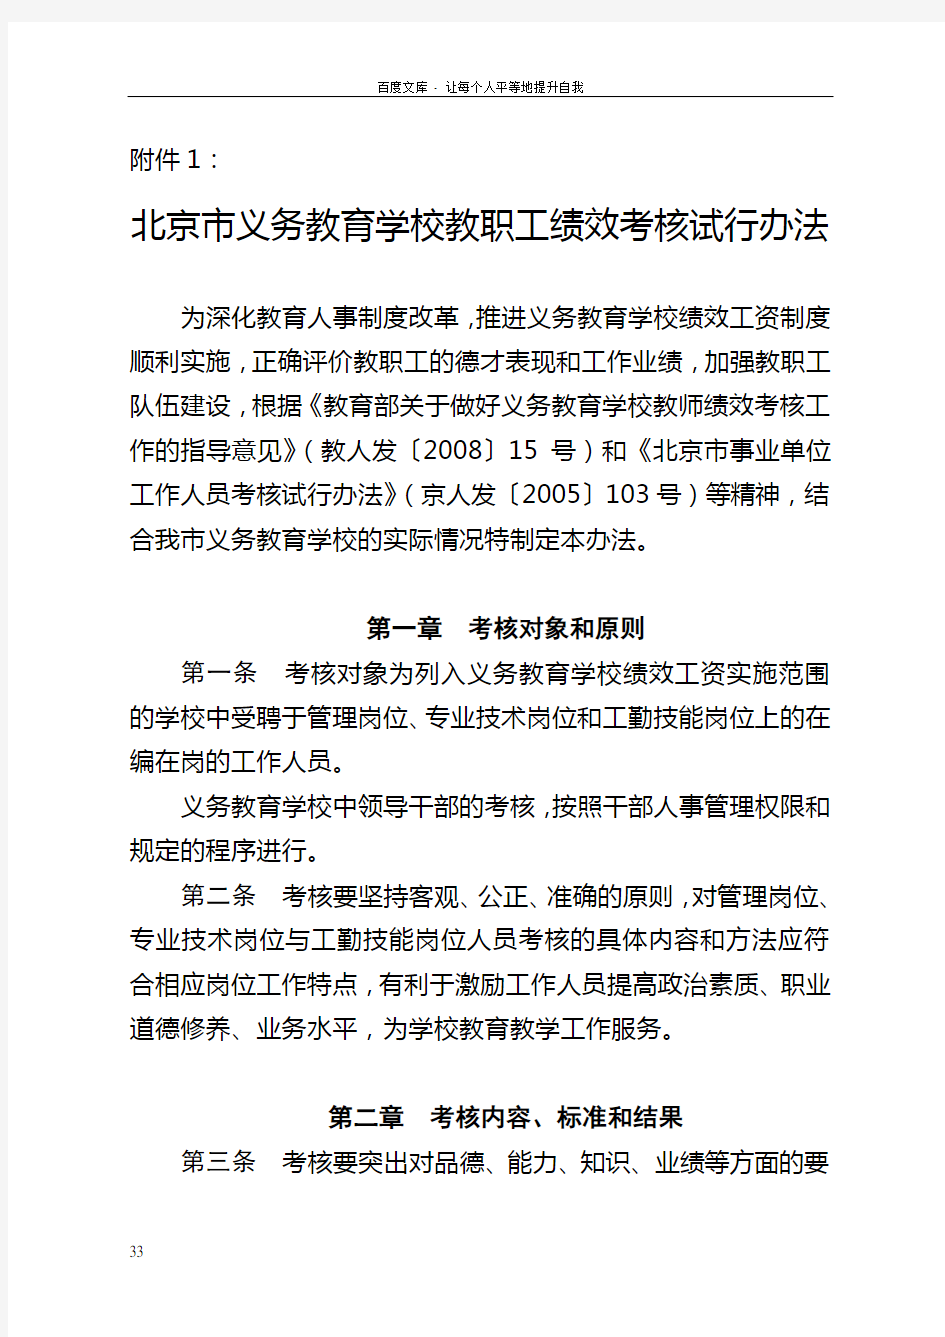 北京市义务教育学校教职工绩效考核试行办法